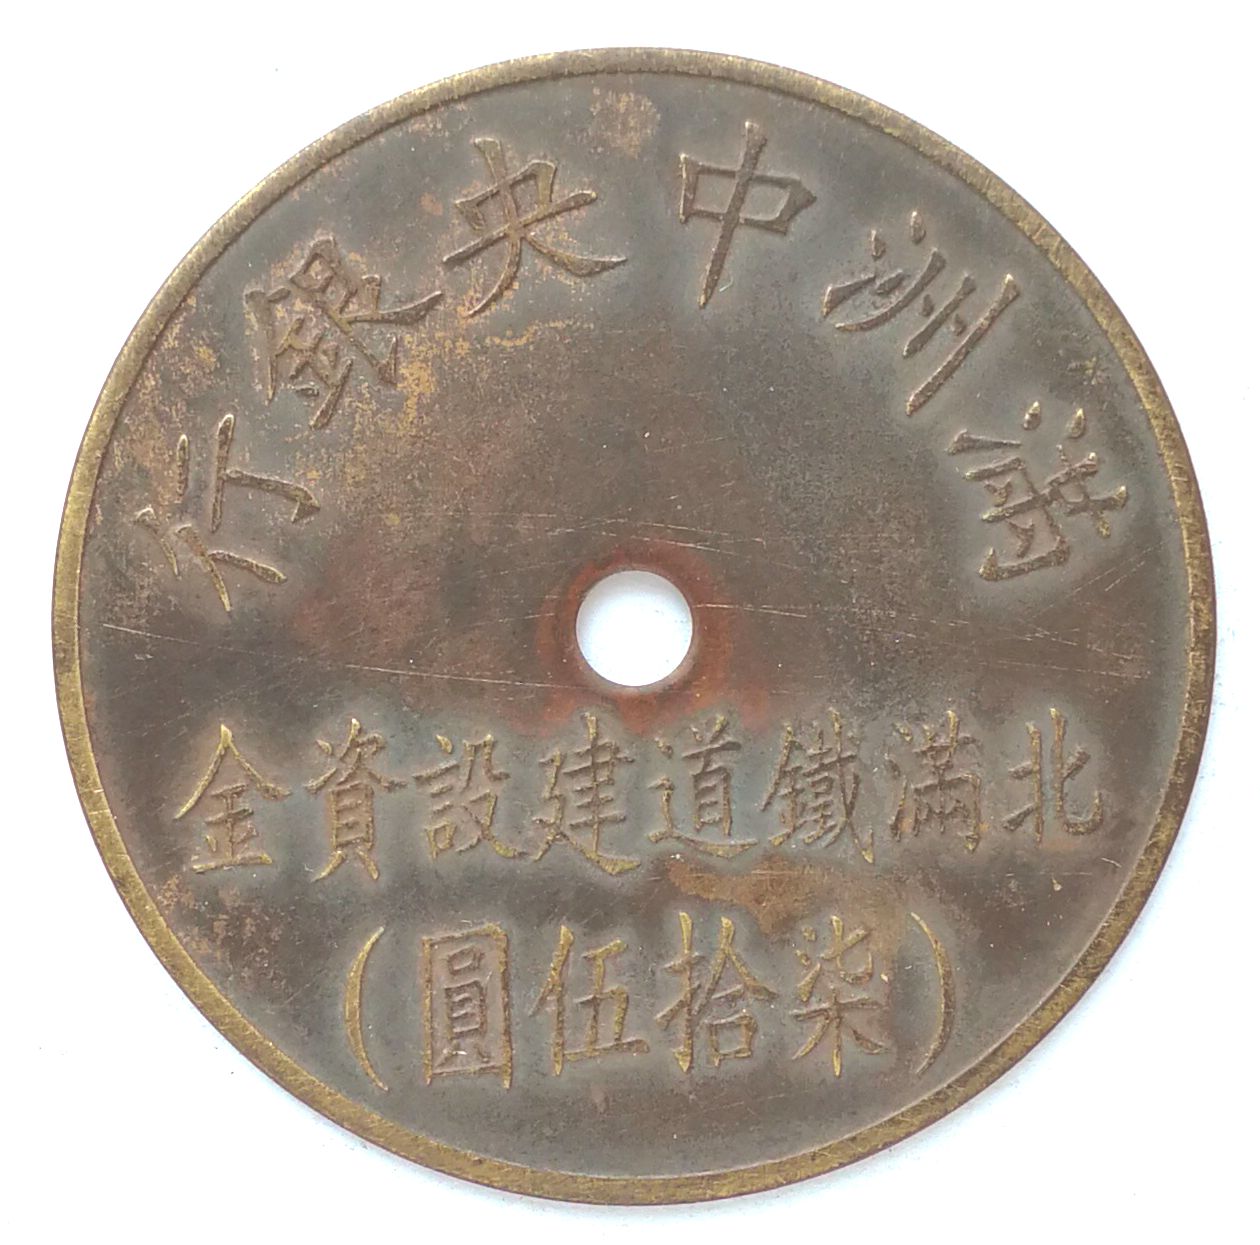 BT472, North Manchukuo Railway Fund, Manchukuo Token, 75 Yen 1944